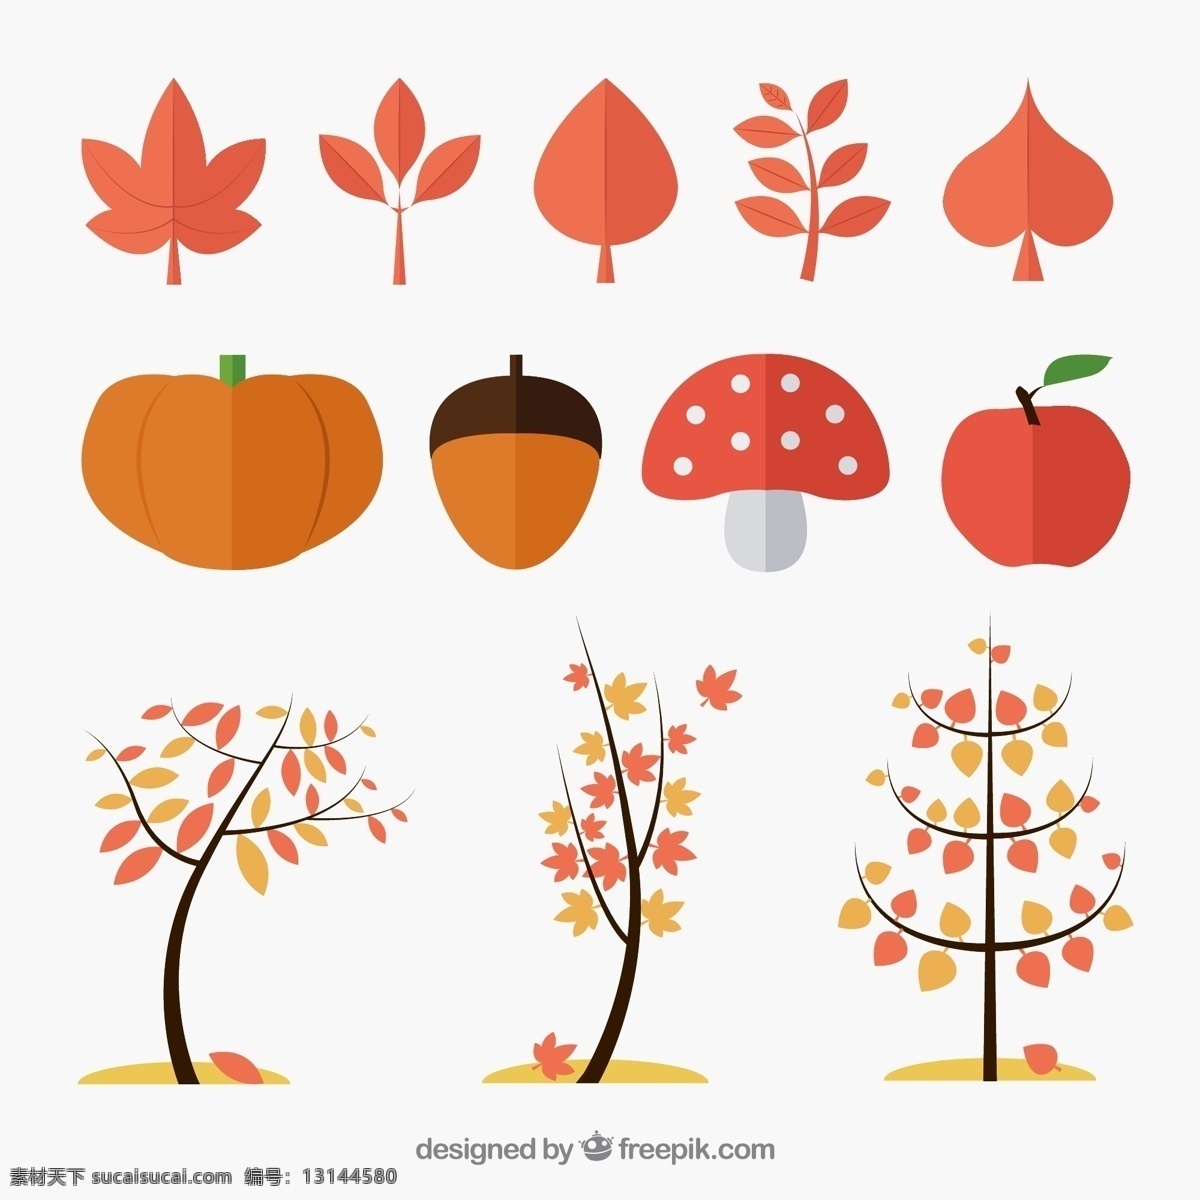 扁平化 秋季 植物 矢量 秋叶 叶子 树叶 南瓜 橡子 蘑菇 苹果 树木 枫树 矢量图